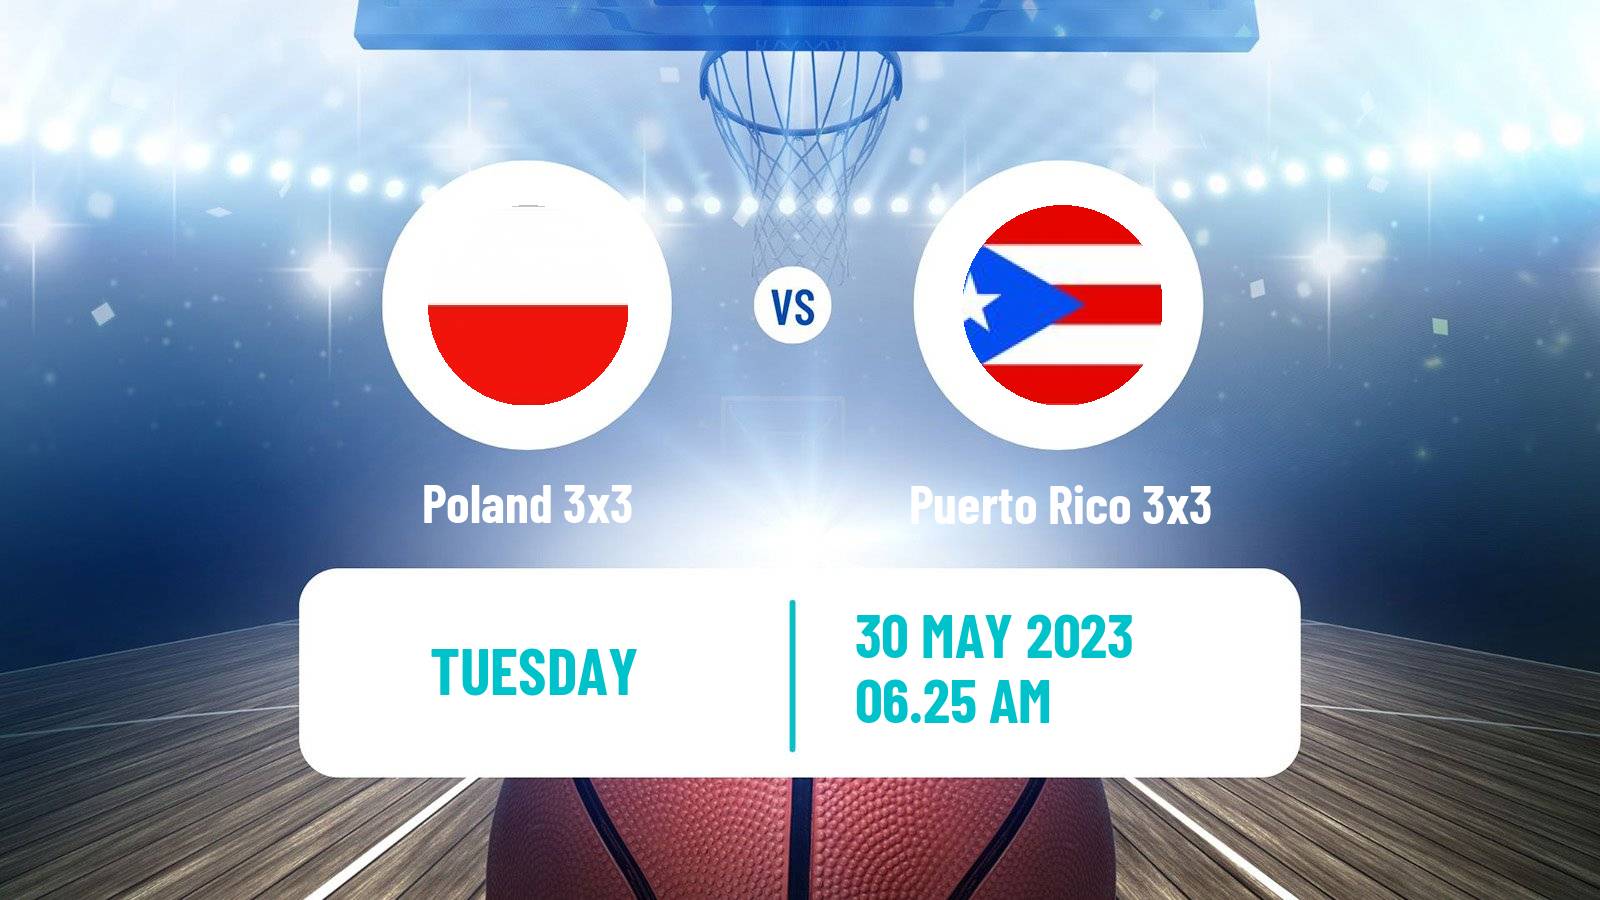 Basketball World Cup Basketball 3x3 Poland 3x3 - Puerto Rico 3x3